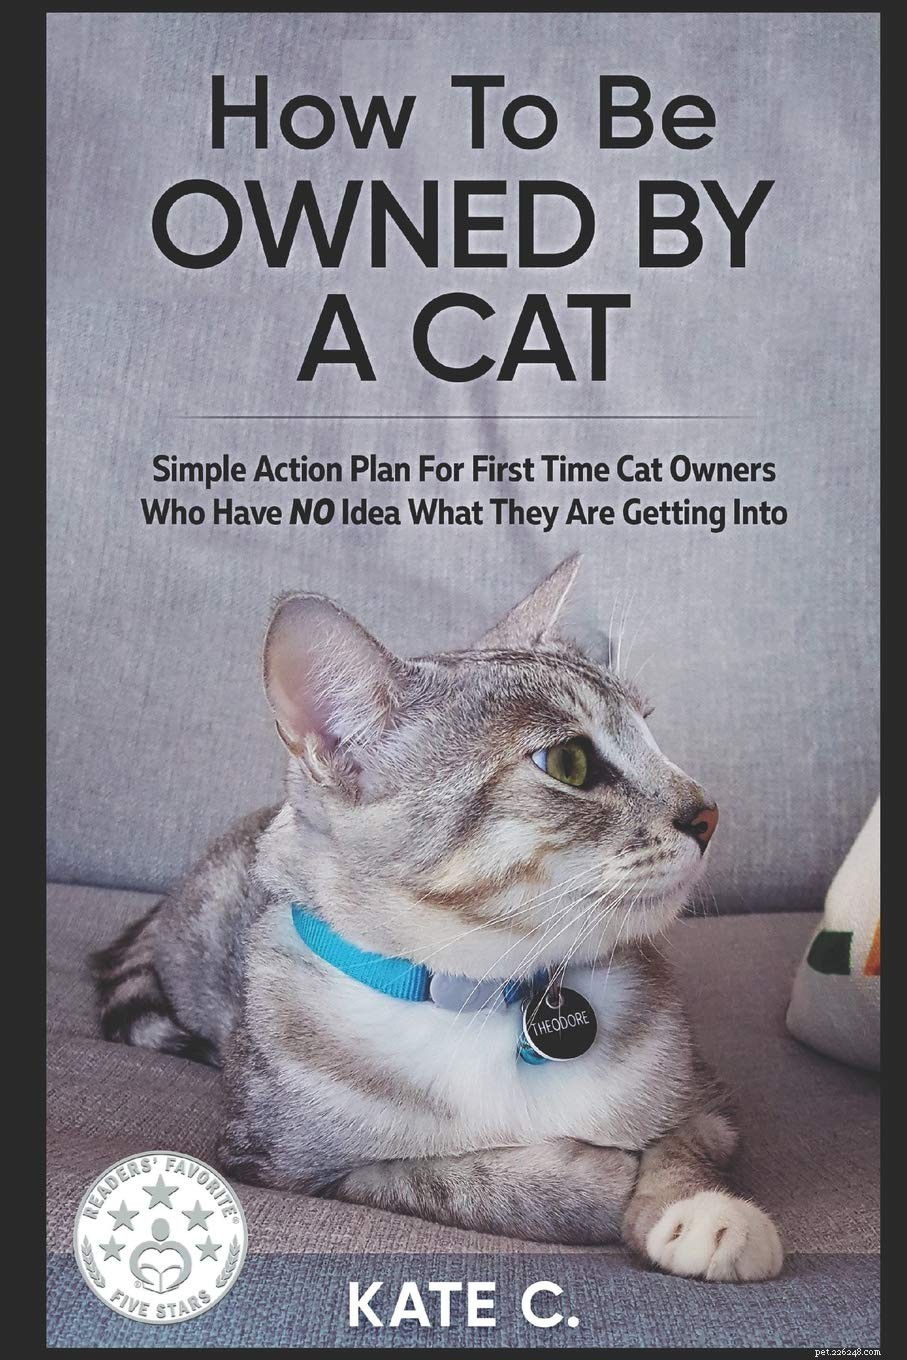 新しい猫の飼い主のためのトップ10のエッセンシャルブック 